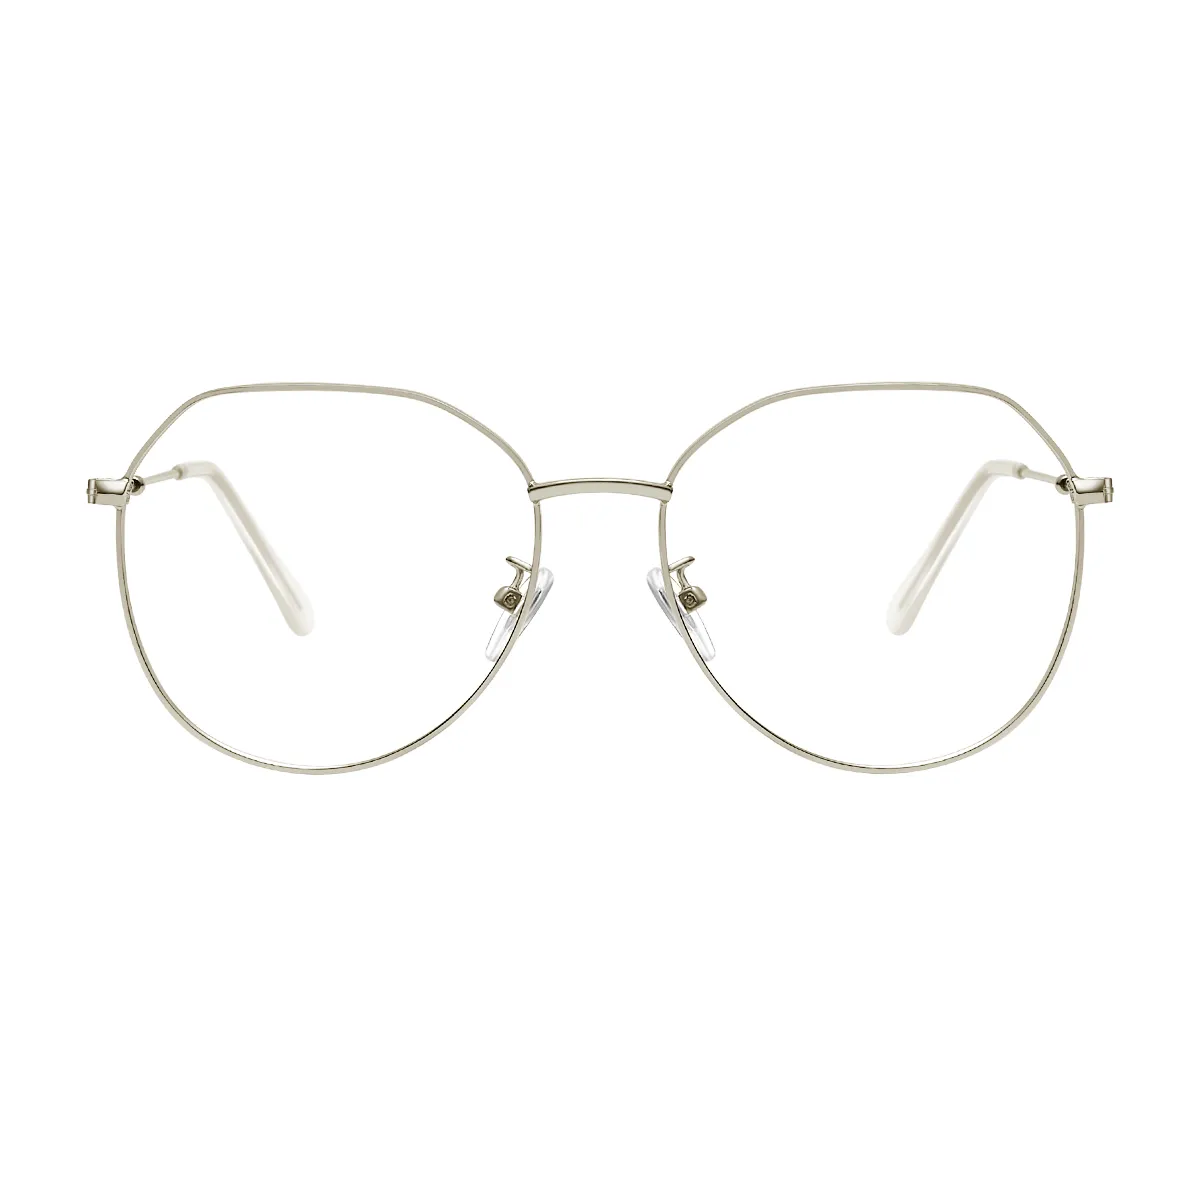 Fashion Aviator Gold  Eyeglasses for Women & Men